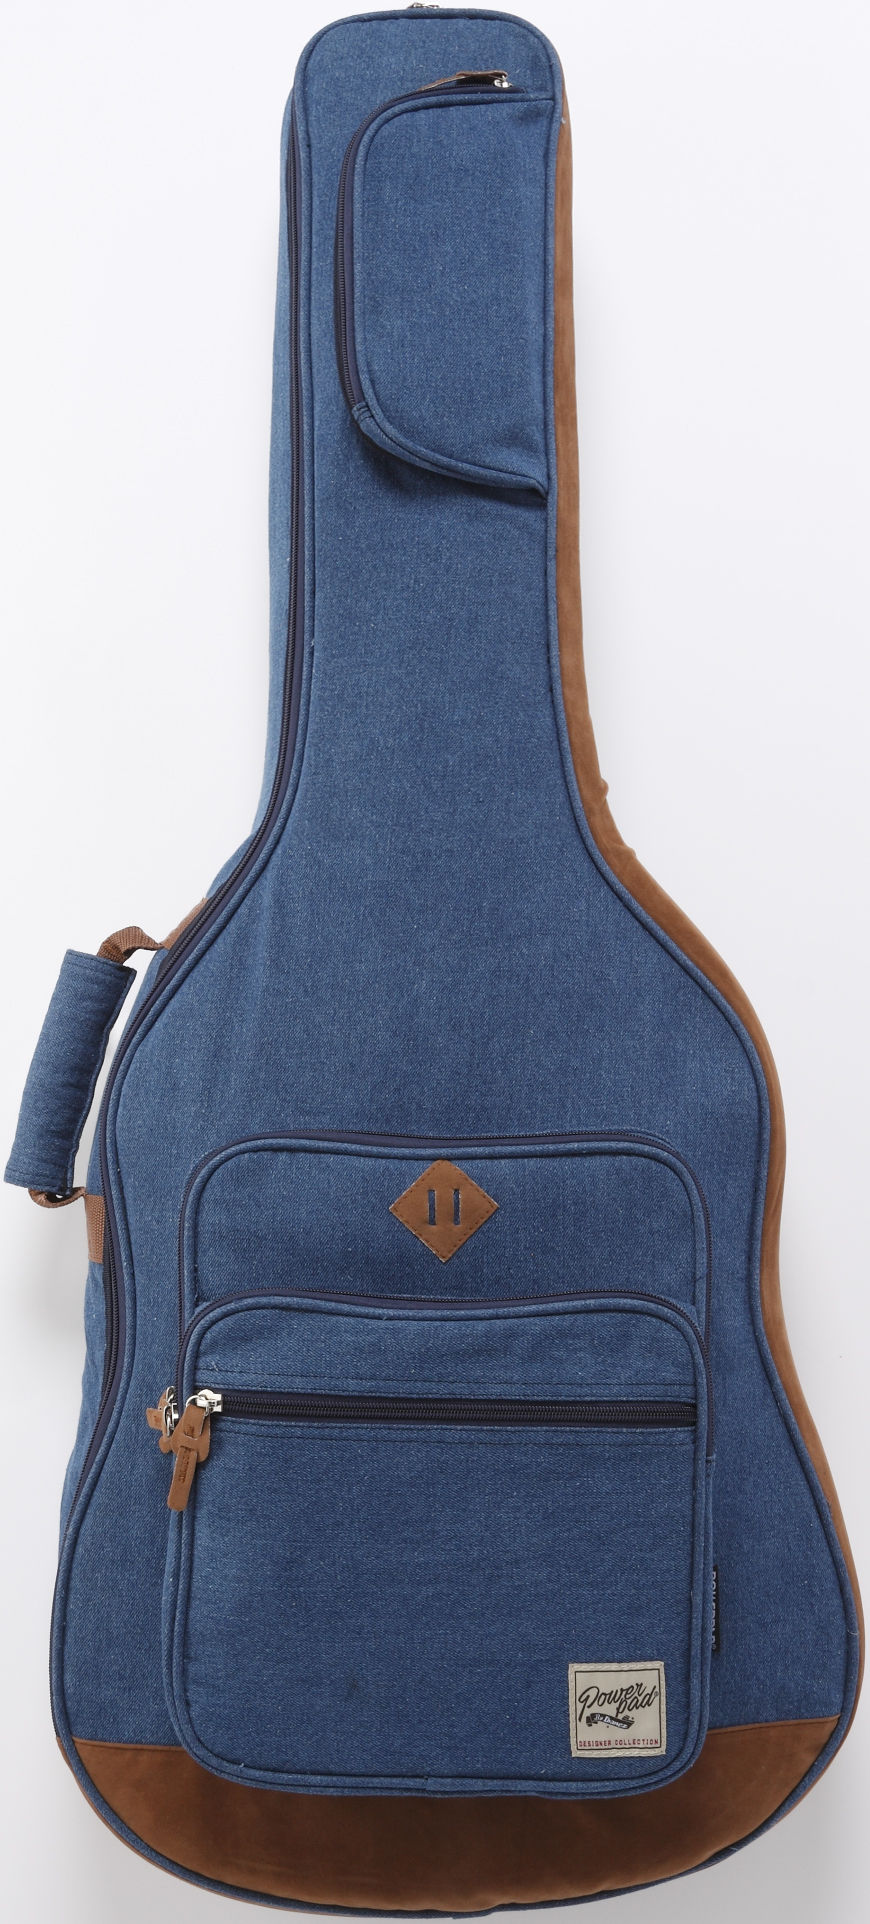 IBANEZ IAB541D-BL - чехол для акустической гитары. утепленный, цвет - синий